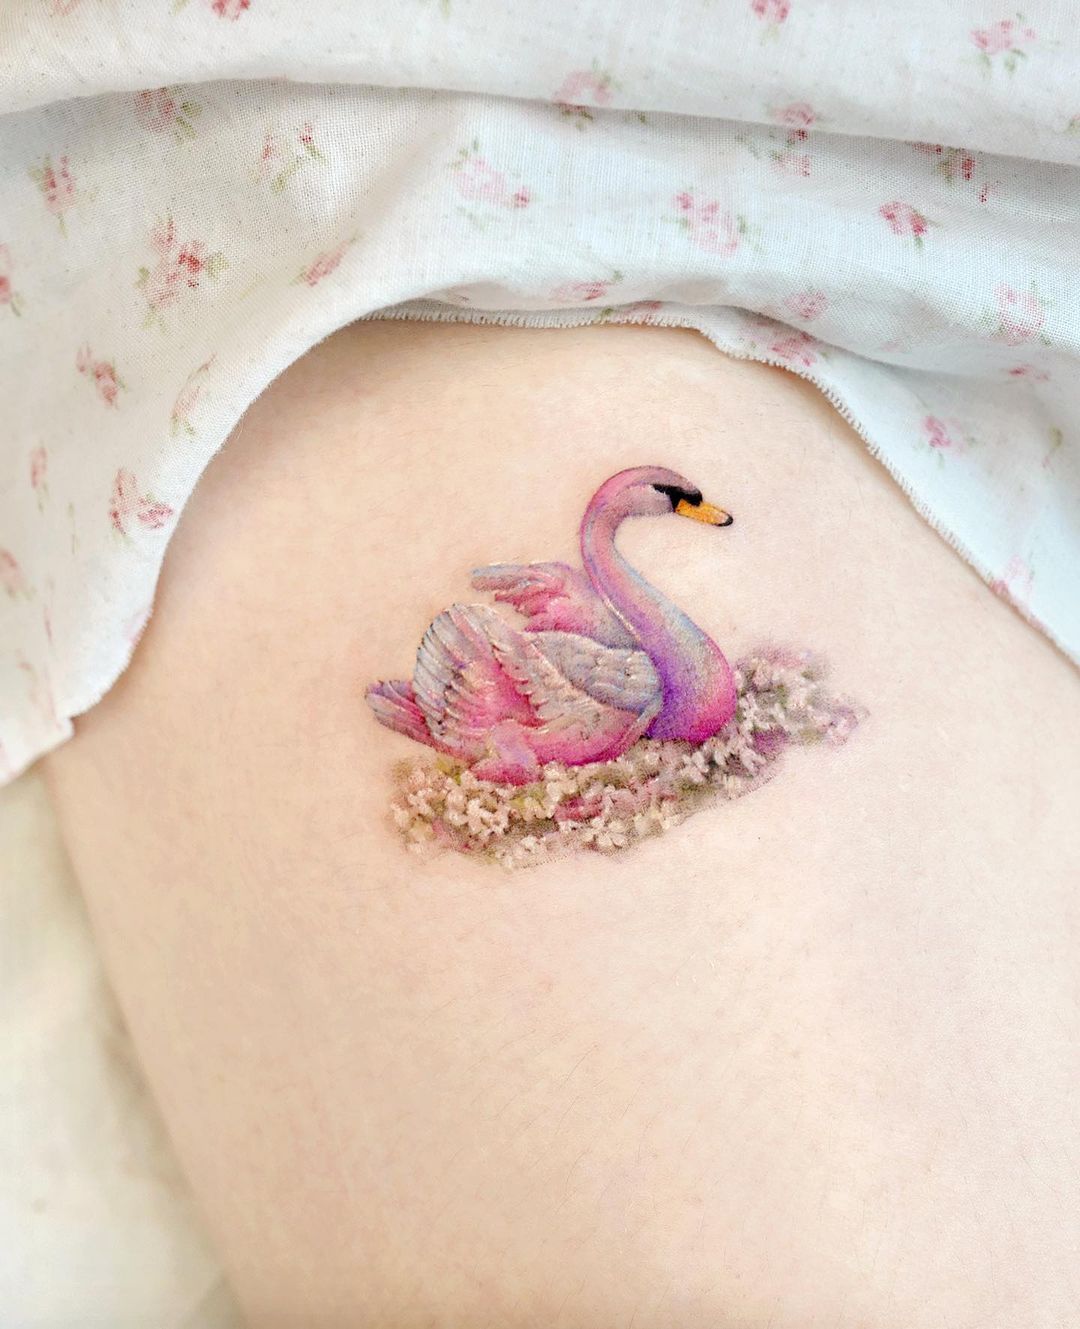 Swan tattoo • Spring tattoo